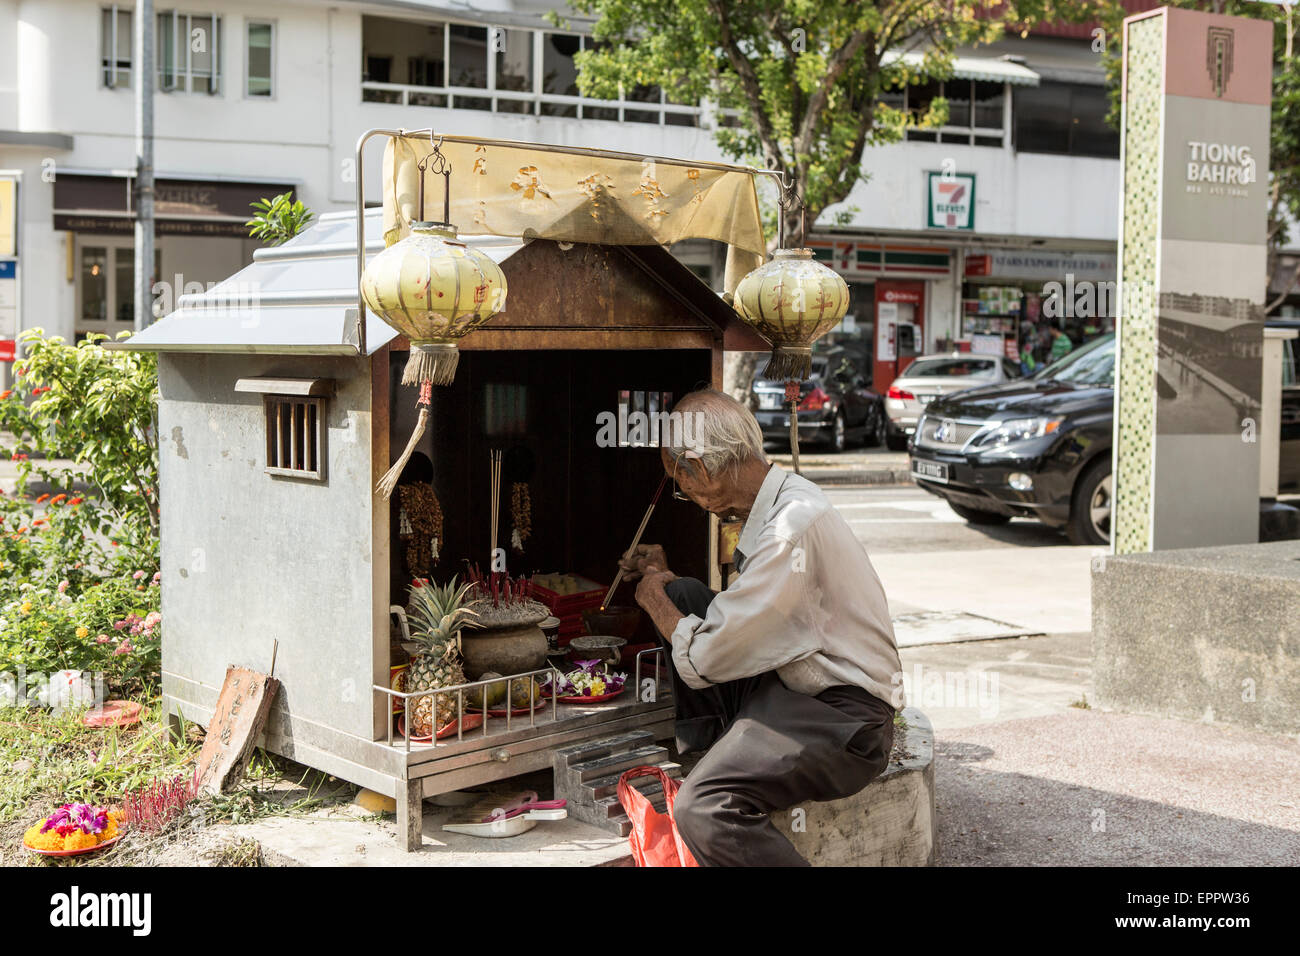 Un homme s'allume de l'encens dans un petit côté route de culte dans la région de Tiong Bahru Singapour. Banque D'Images